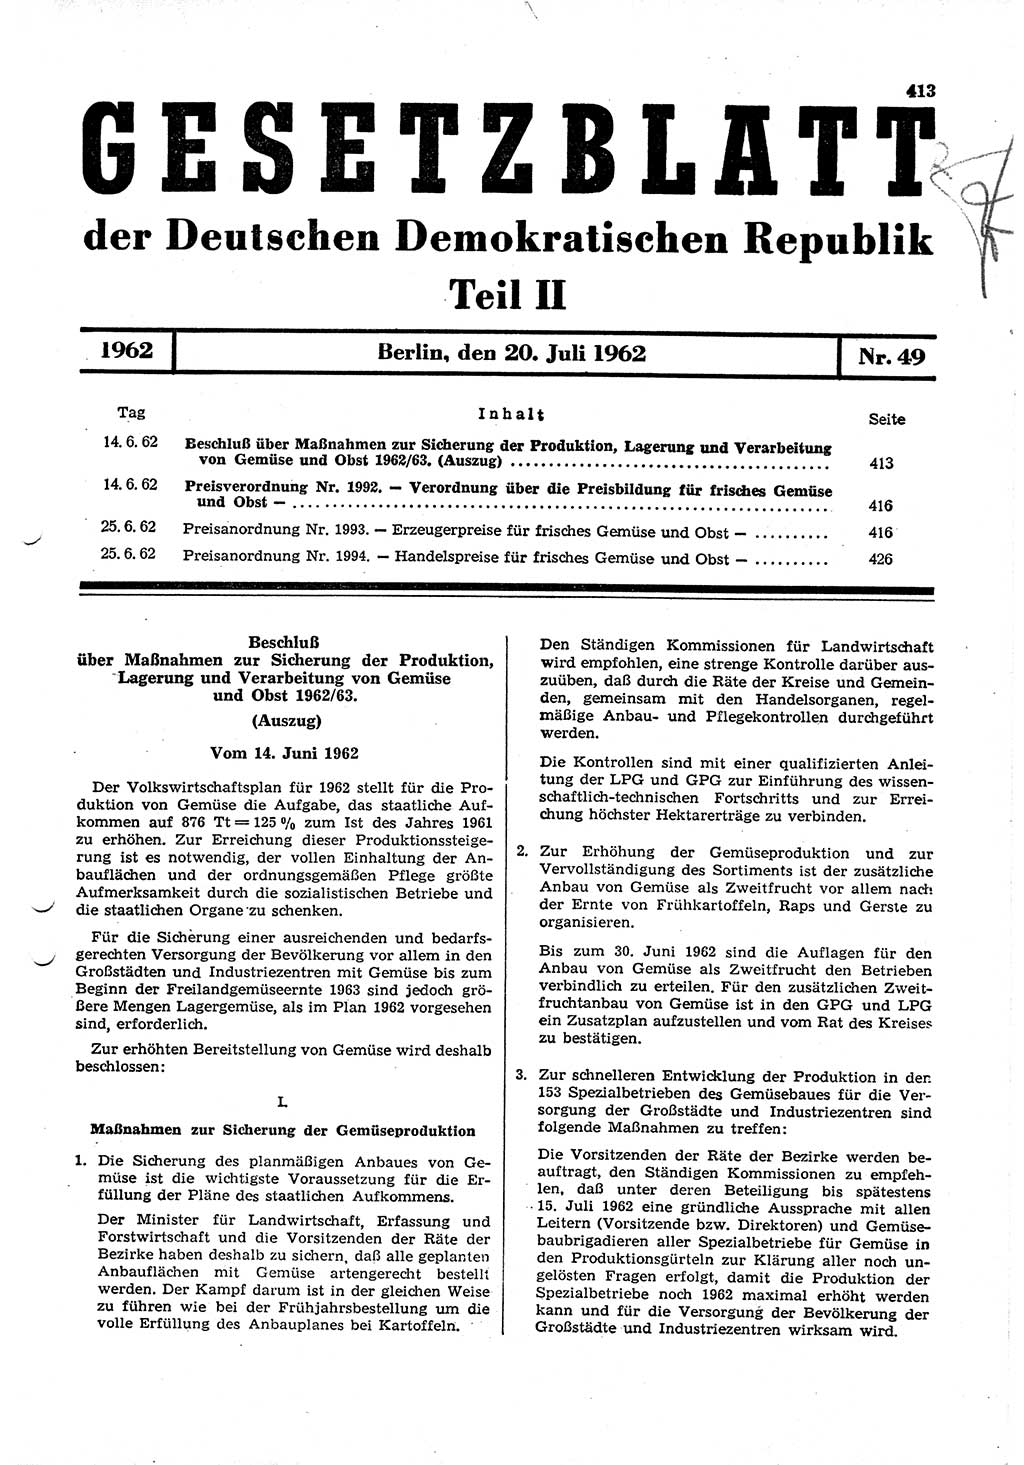 Gesetzblatt (GBl.) der Deutschen Demokratischen Republik (DDR) Teil ⅠⅠ 1962, Seite 413 (GBl. DDR ⅠⅠ 1962, S. 413)